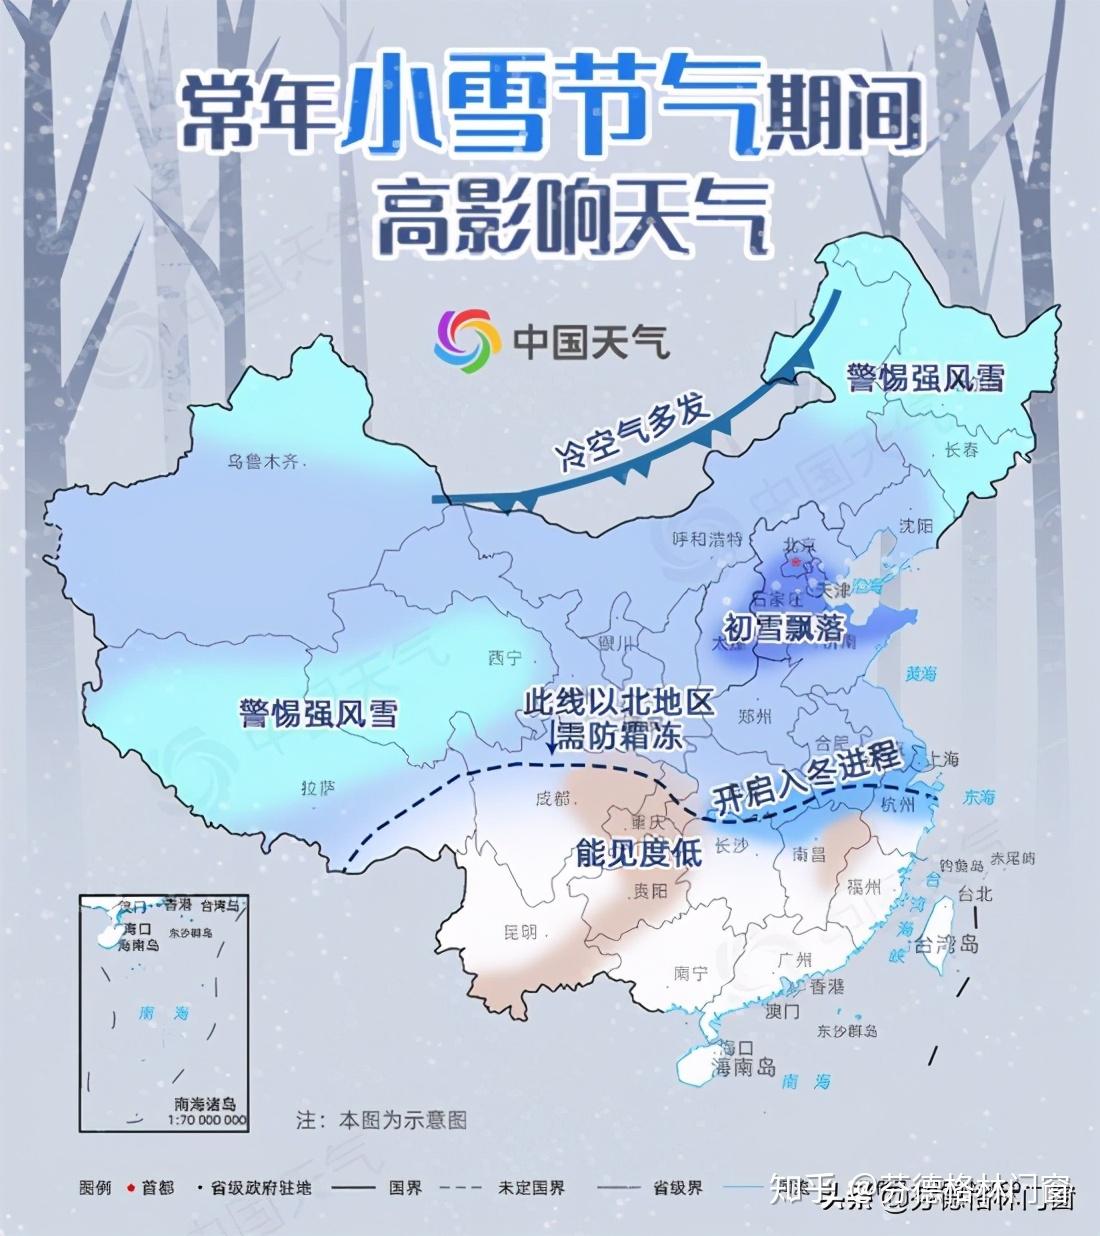 小雪,中国农历二十四节气的第二十个,预示着一年中寒冷天气的开始